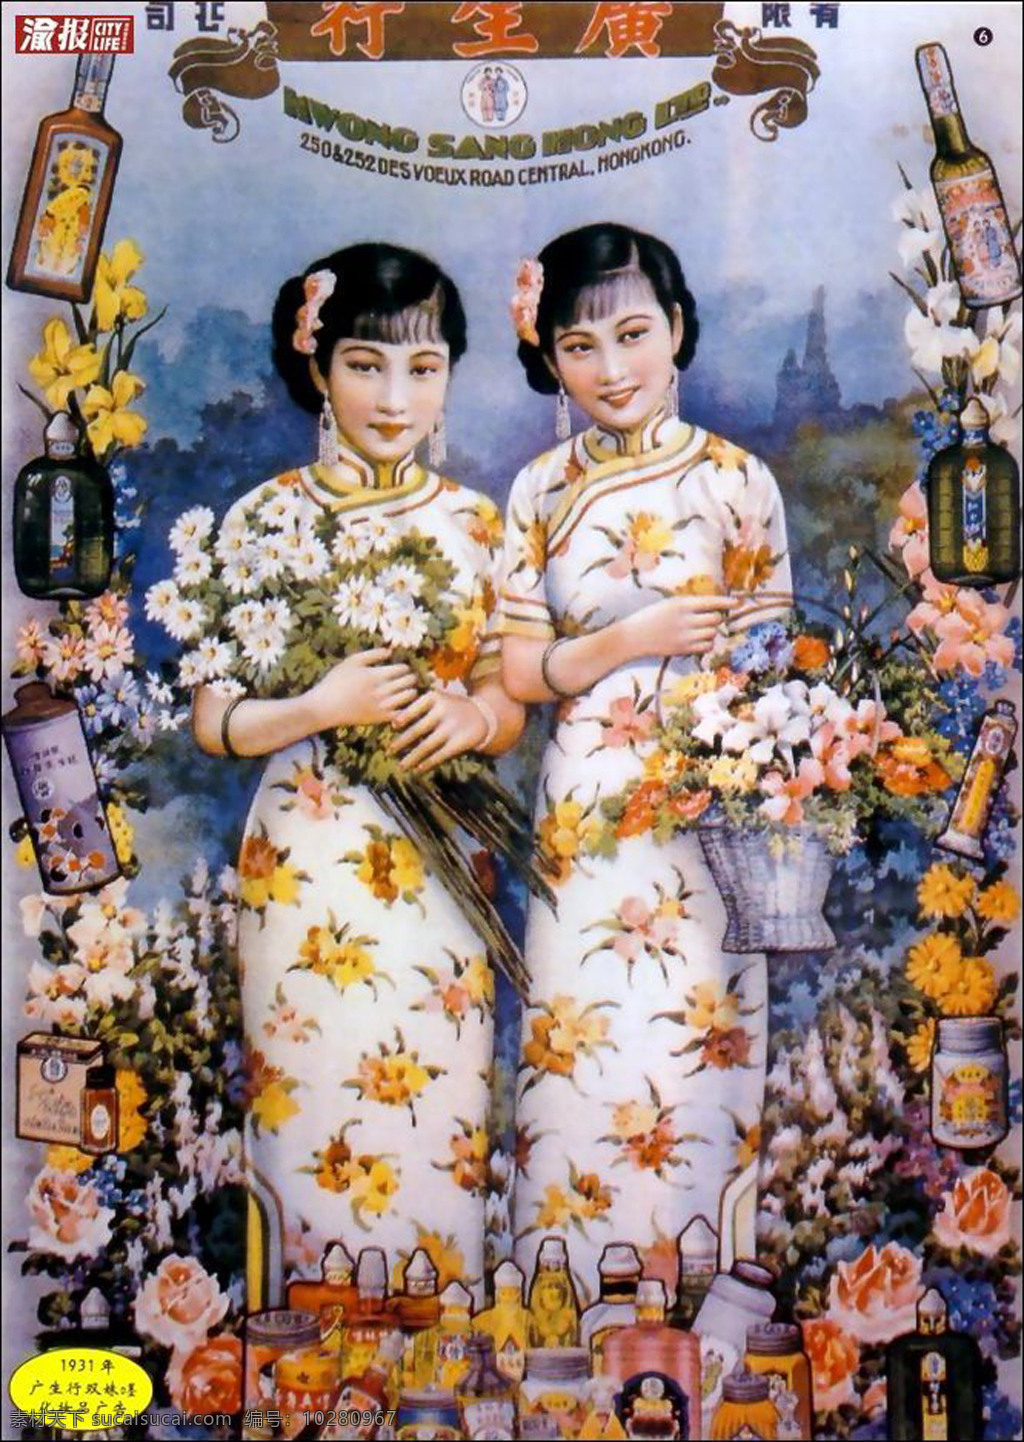 传统文化 老海报 老上海 老上海海报 美女 文化艺术 老 上海 设计素材 模板下载 海报 老上海美女 企业文化海报